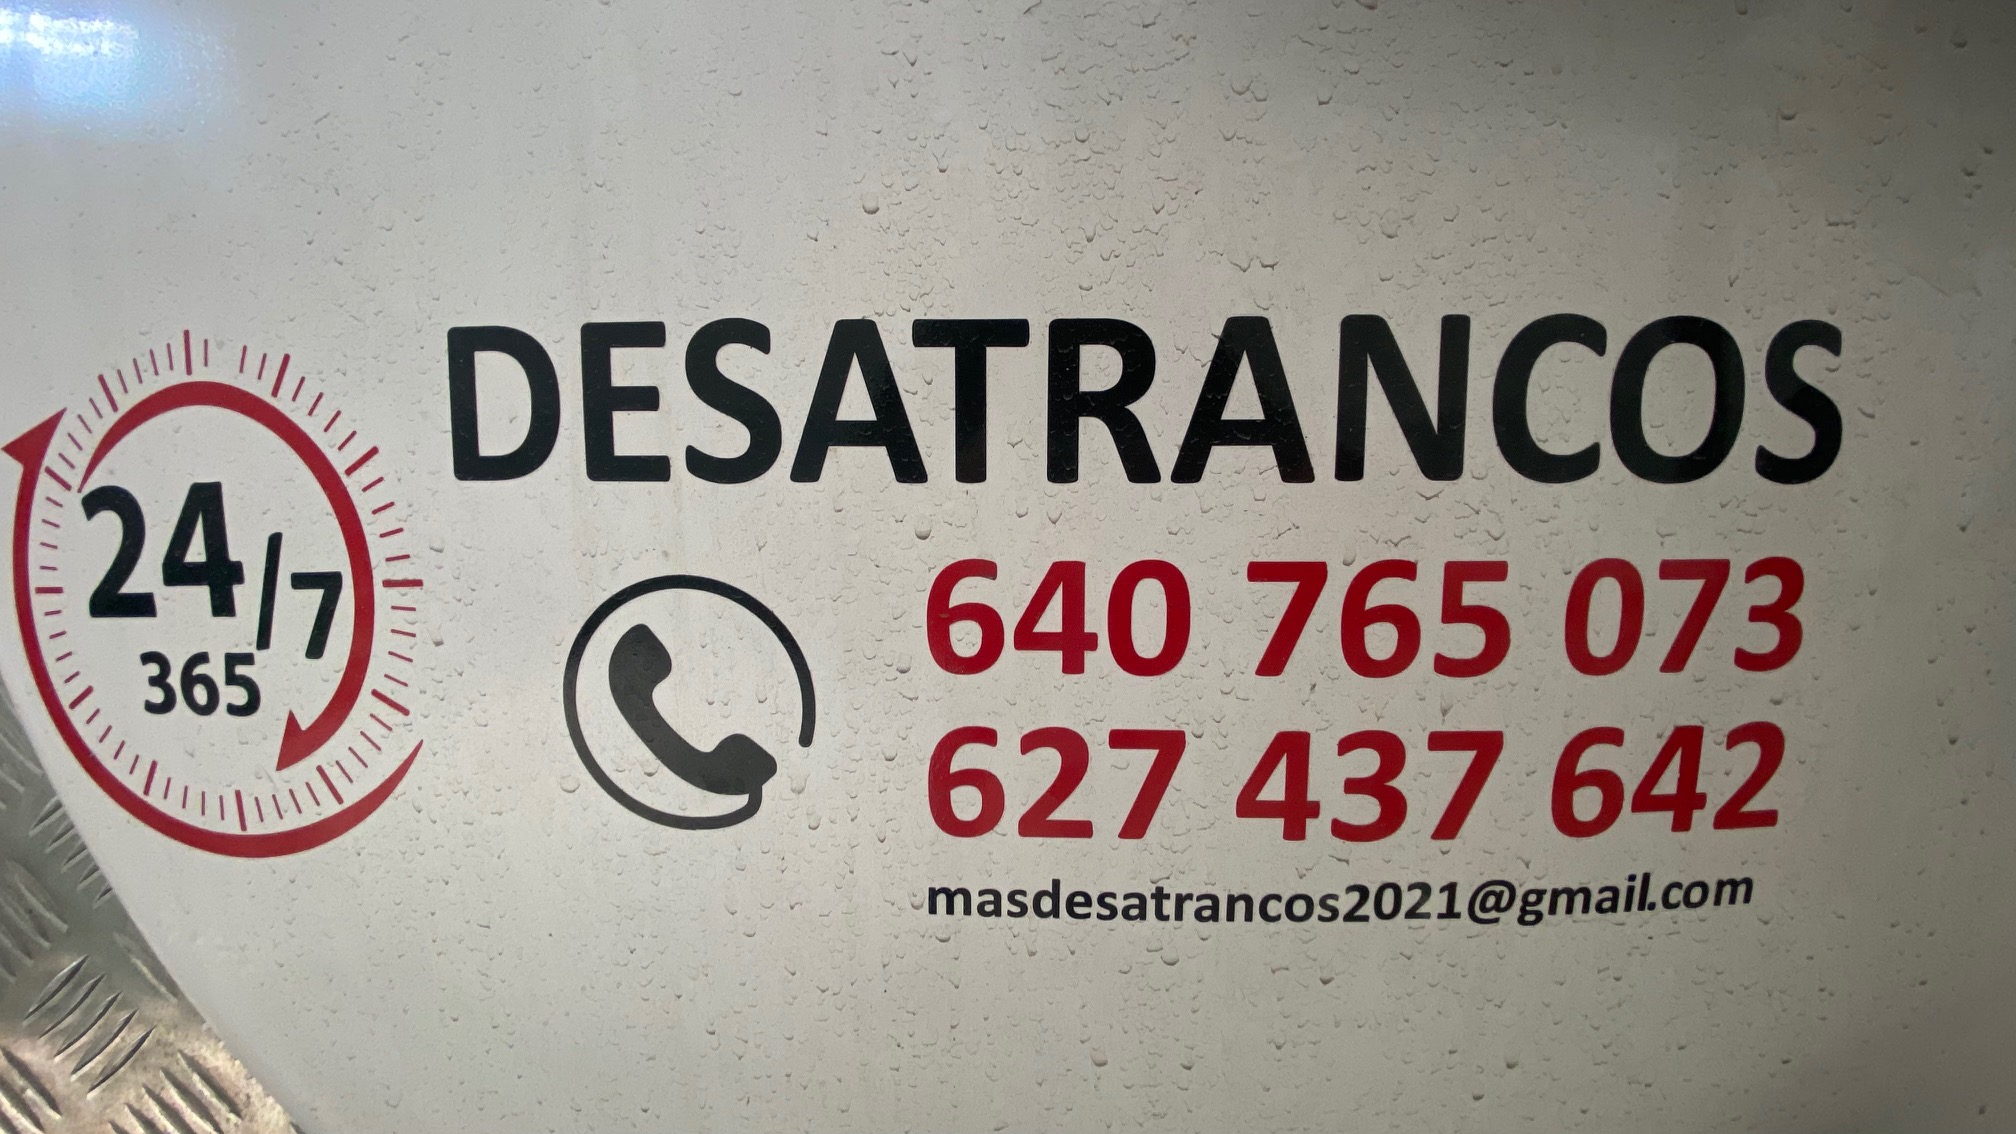 DESATASCO.MADRID - Servicios de desatasco de tuberías, vaciado de pozos negro, limpieza de alcantarillado y más en Villanueva del Pardillo	Desatascos Villanueva del Pardillo	desatascos villanueva del pardillo